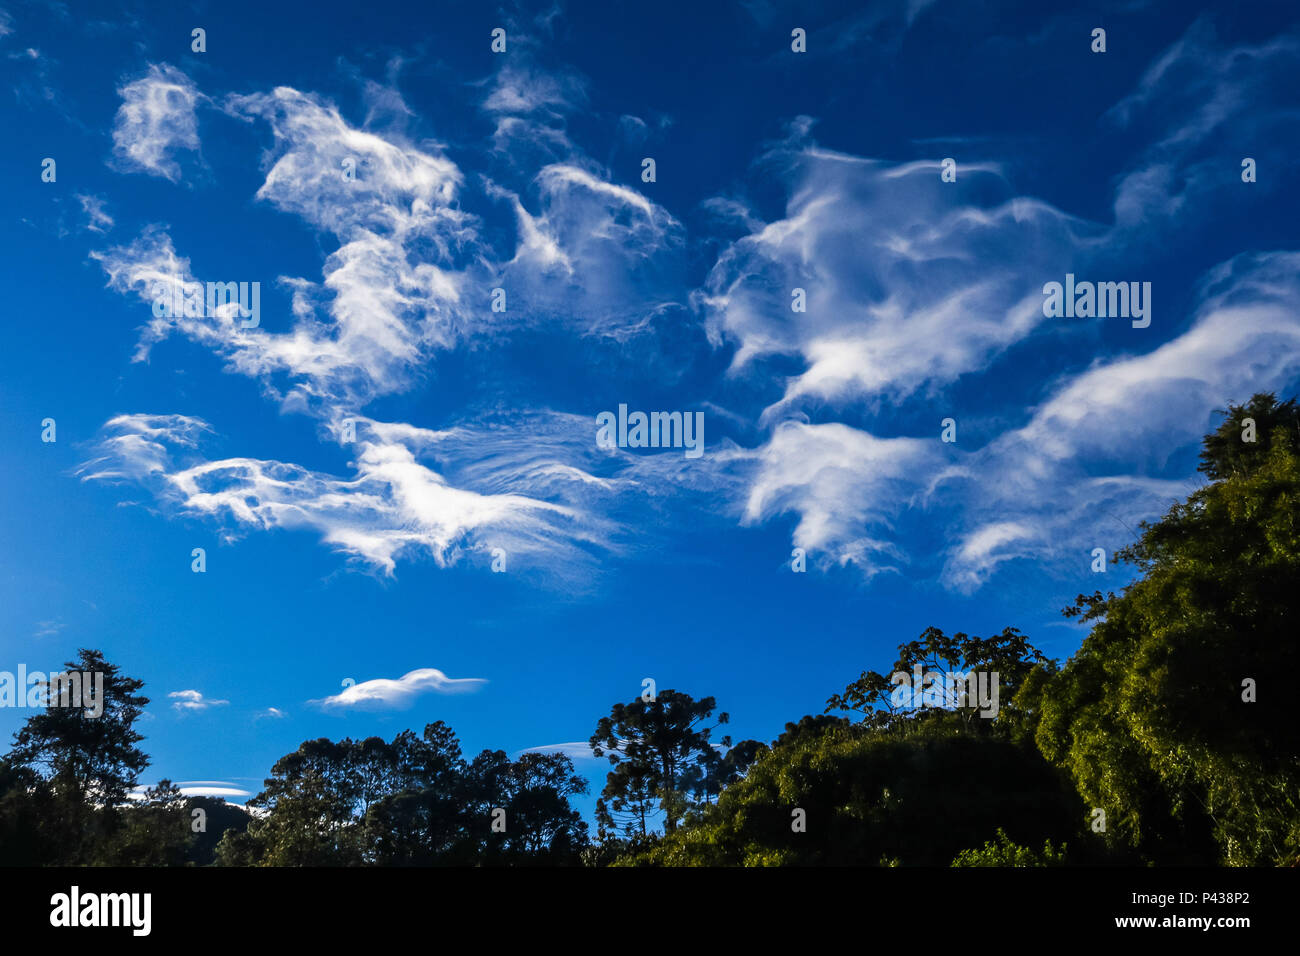 Nuvens cirrus vista na cidade de Visconde de Mauá, SP. São nuvens altas com brilho sedoso, isoladas e formadas por cristais de gelo parecendo convergir para o horizonte. Podem se formar da evolução da bigorna da cumulusnimbus. Stock Photo